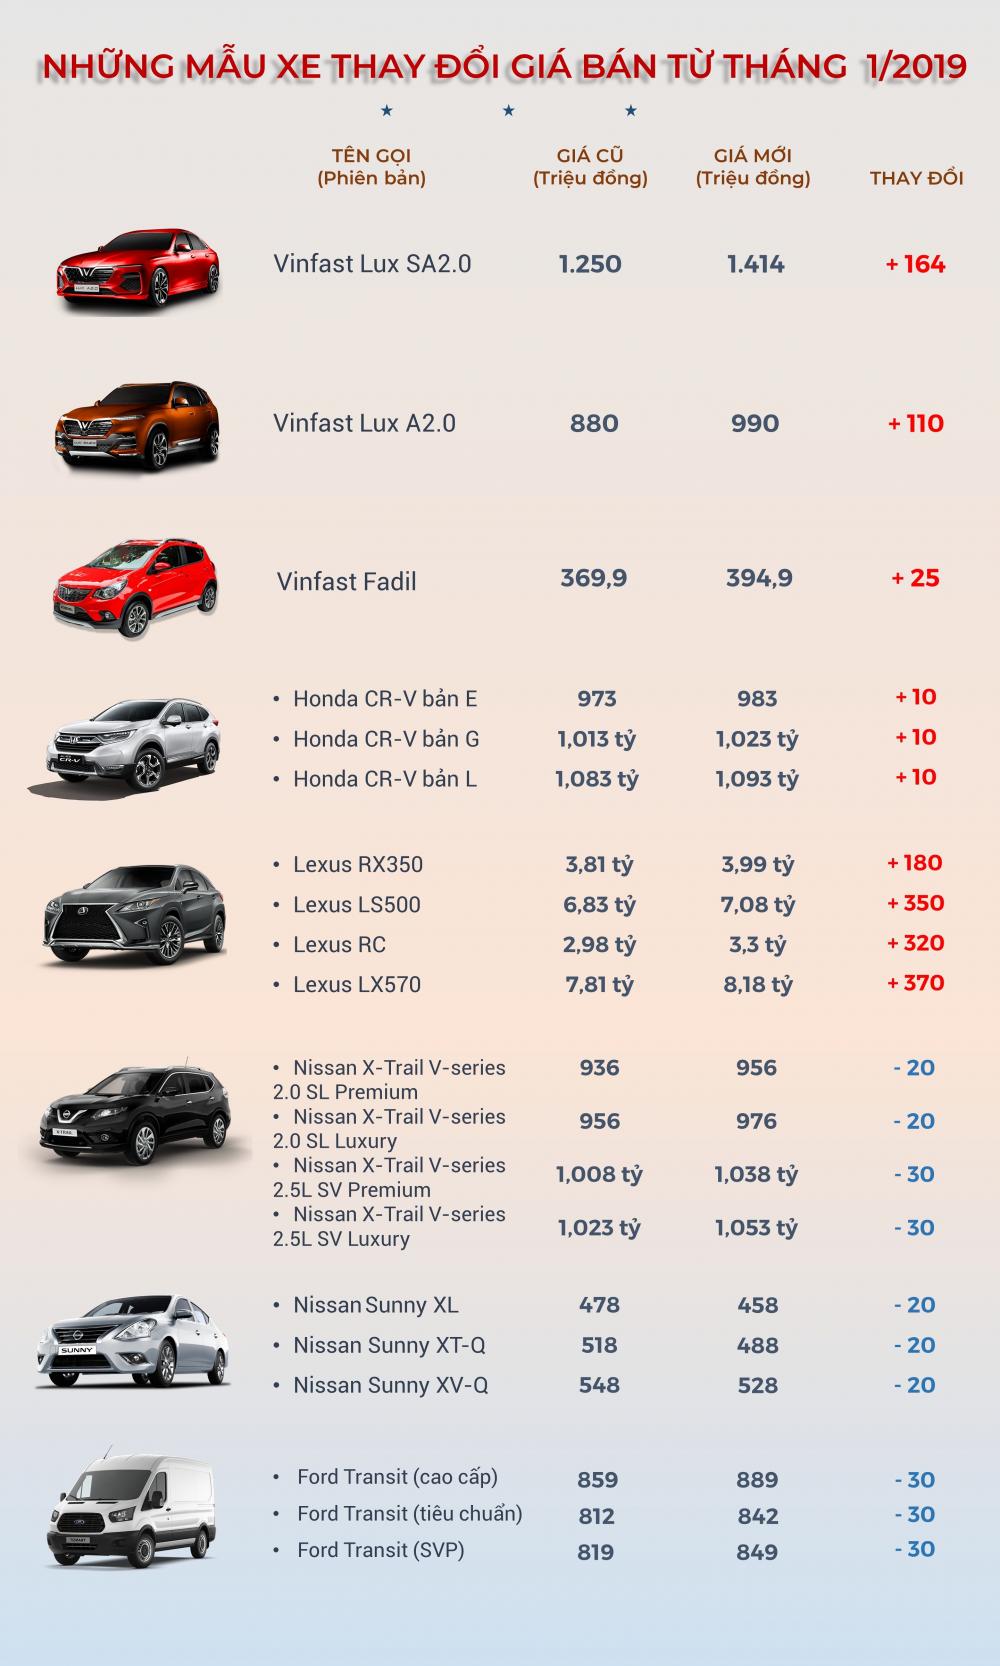 Nghịch biến giá ô tô 2019: Xe giảm giá ít, xe tăng đến 400 triệu đồng